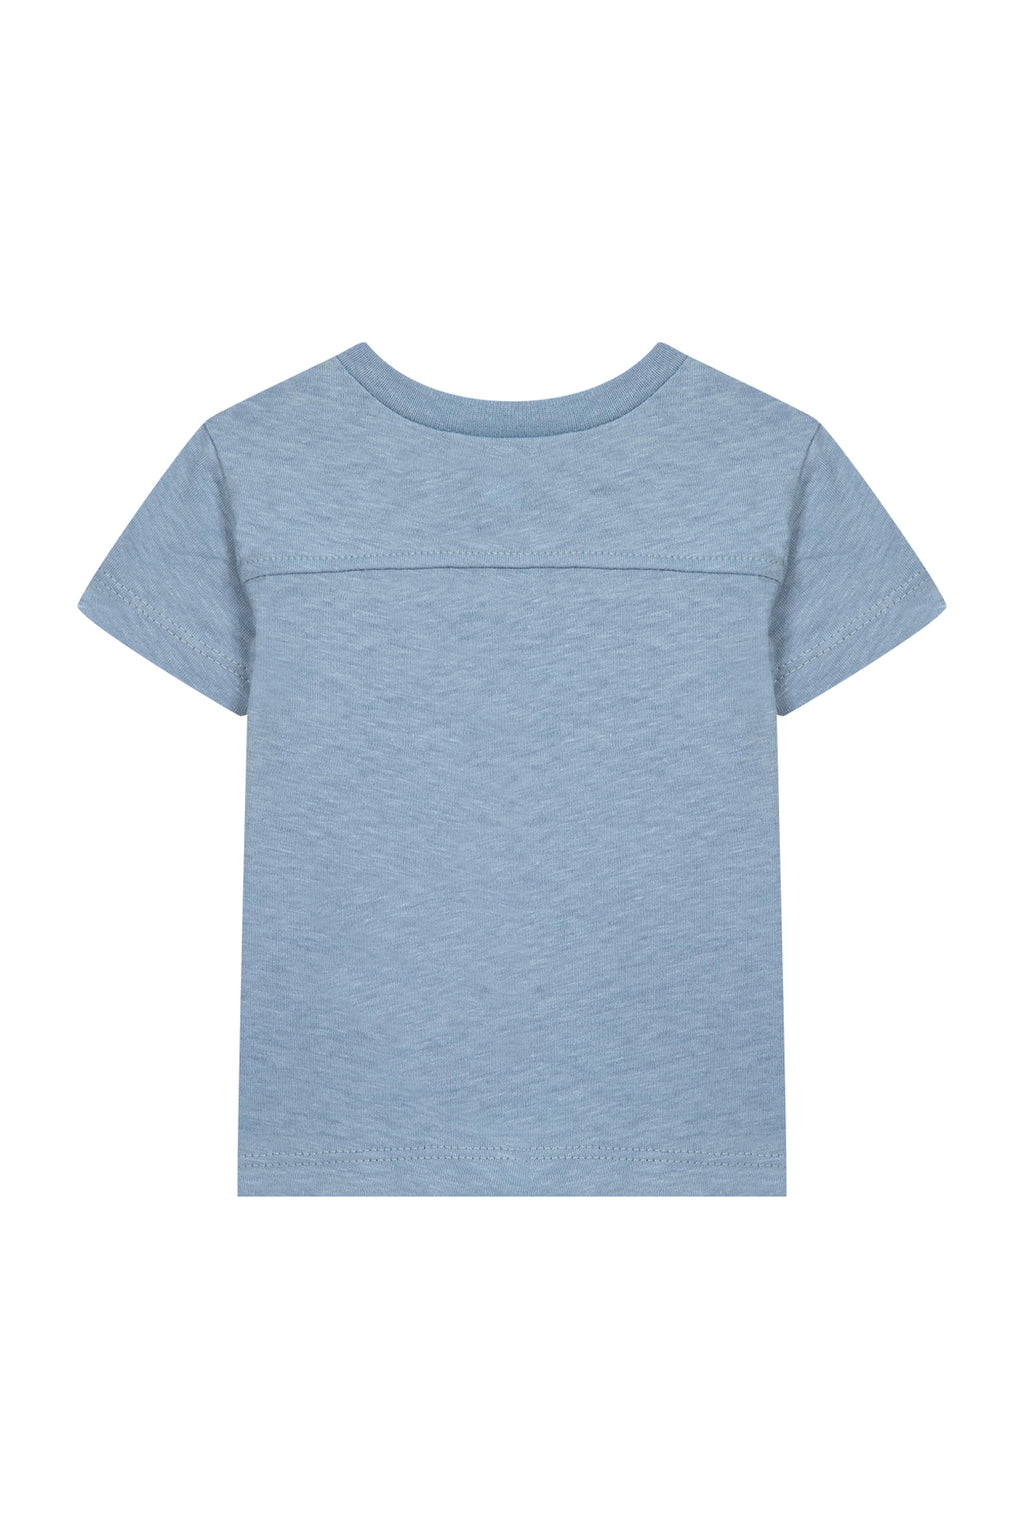 T -Shirt - Blau Kobalt Illustration Van